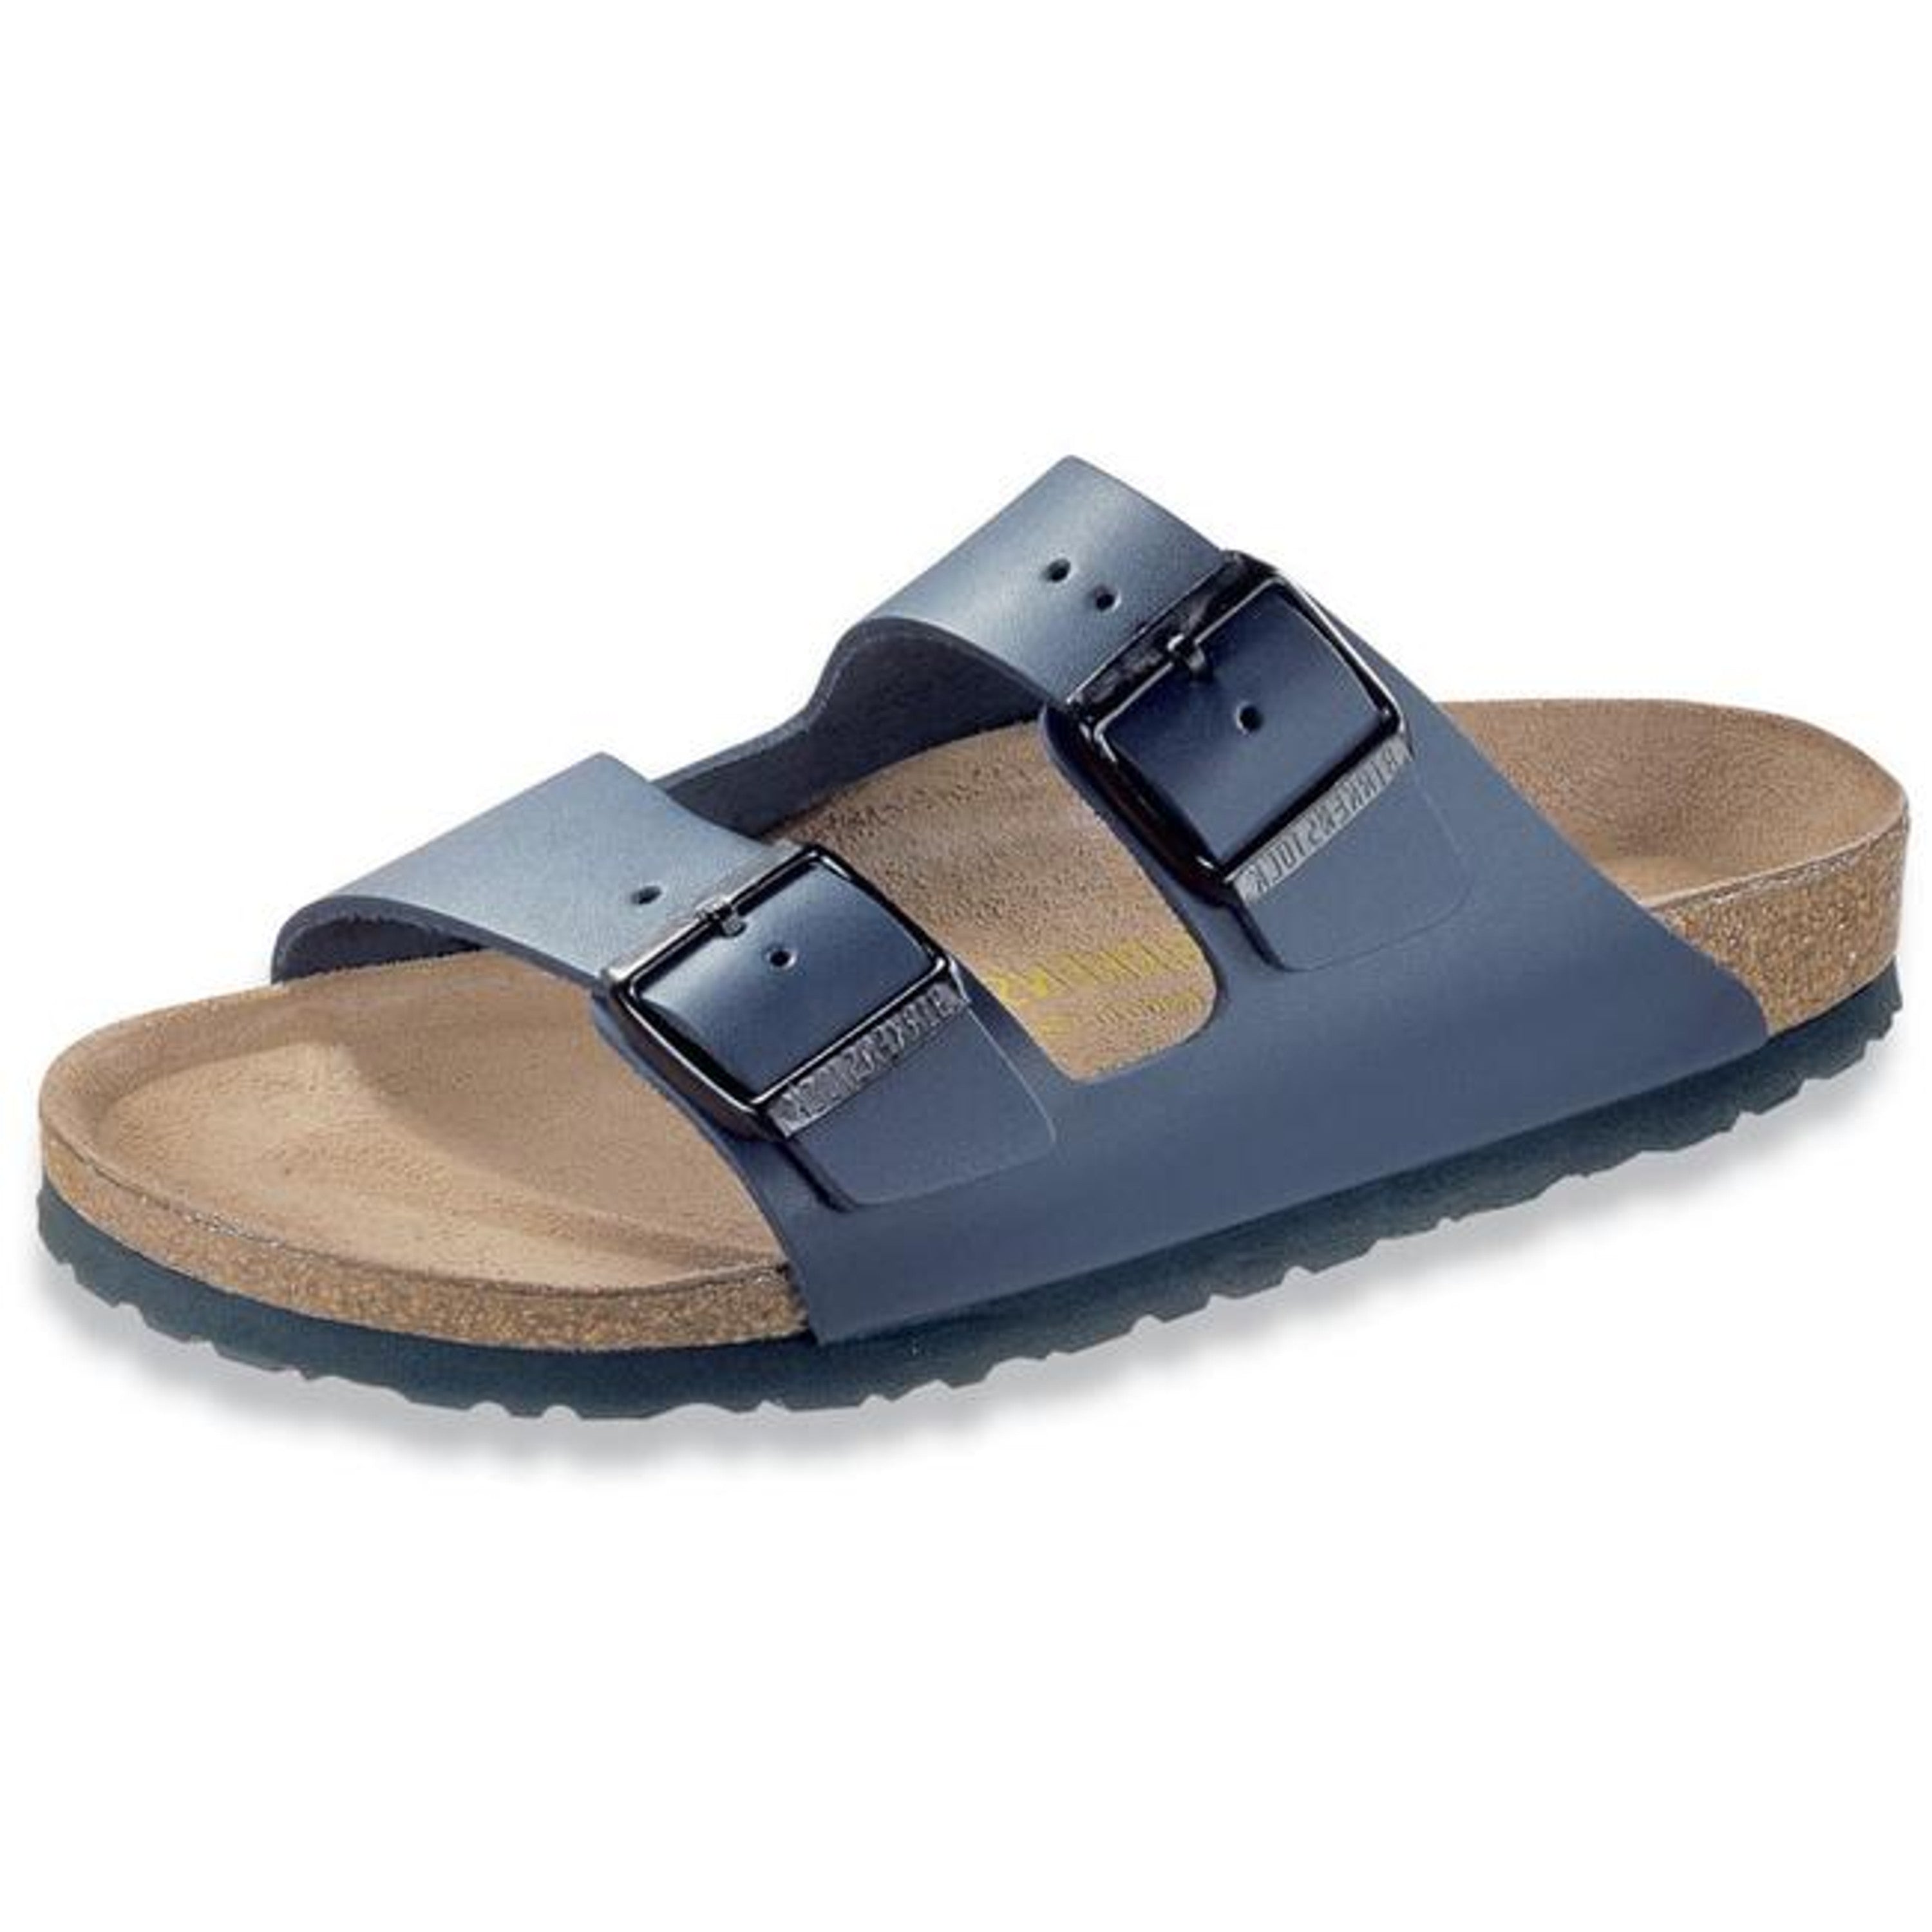 Birkenstock Arizona Leather Nature Blue Slides Sandals Thongs Slip On Regular - Bartel-Shop